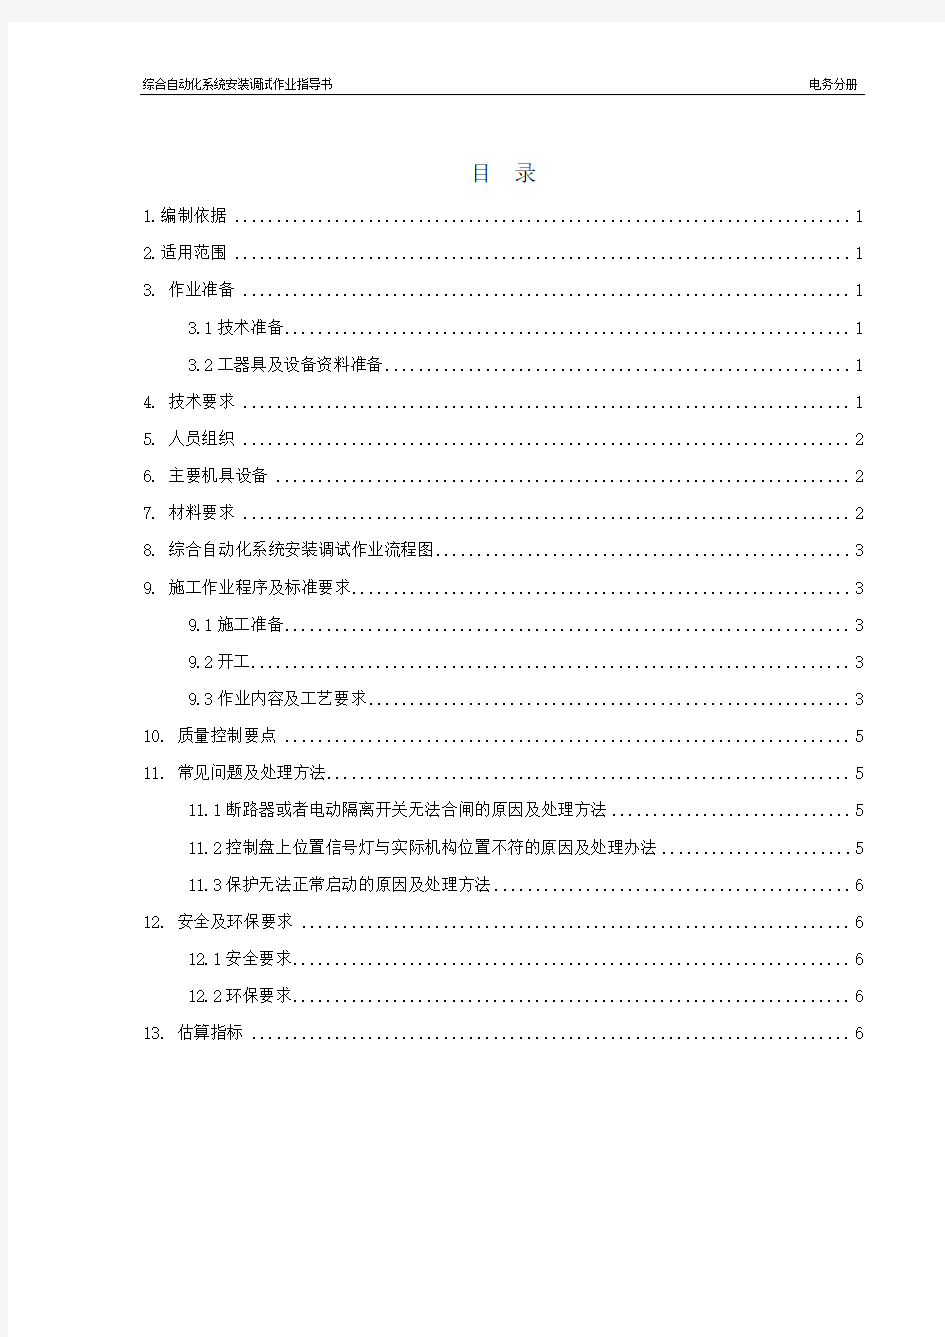 综合自动化系统安装调试作业指导书——黄晓辉